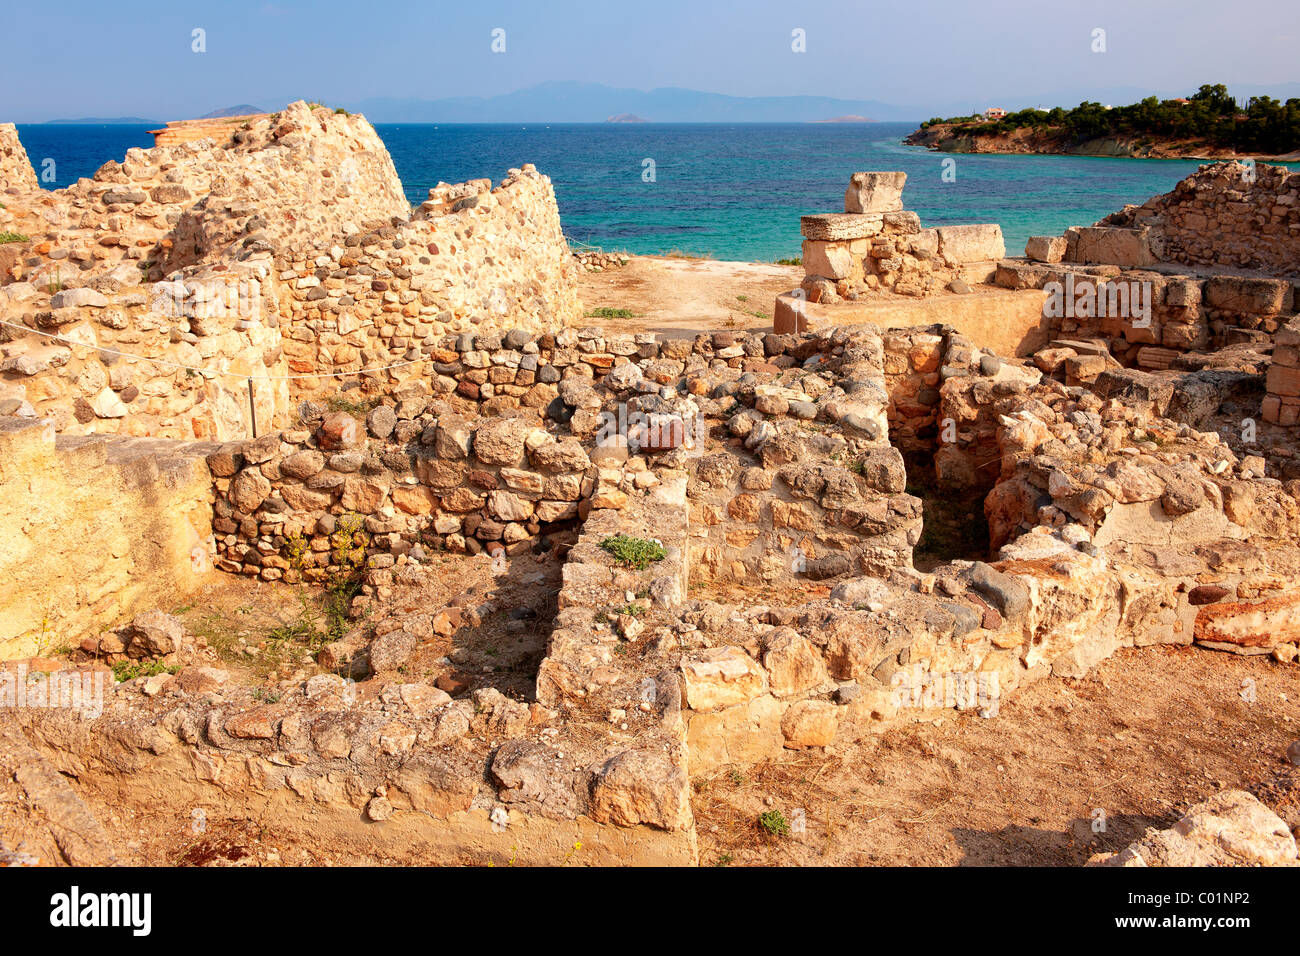 El sitio arqueológico de la antigua Grecia Aegina, Kolna, griego Islas Sarónicas Foto de stock